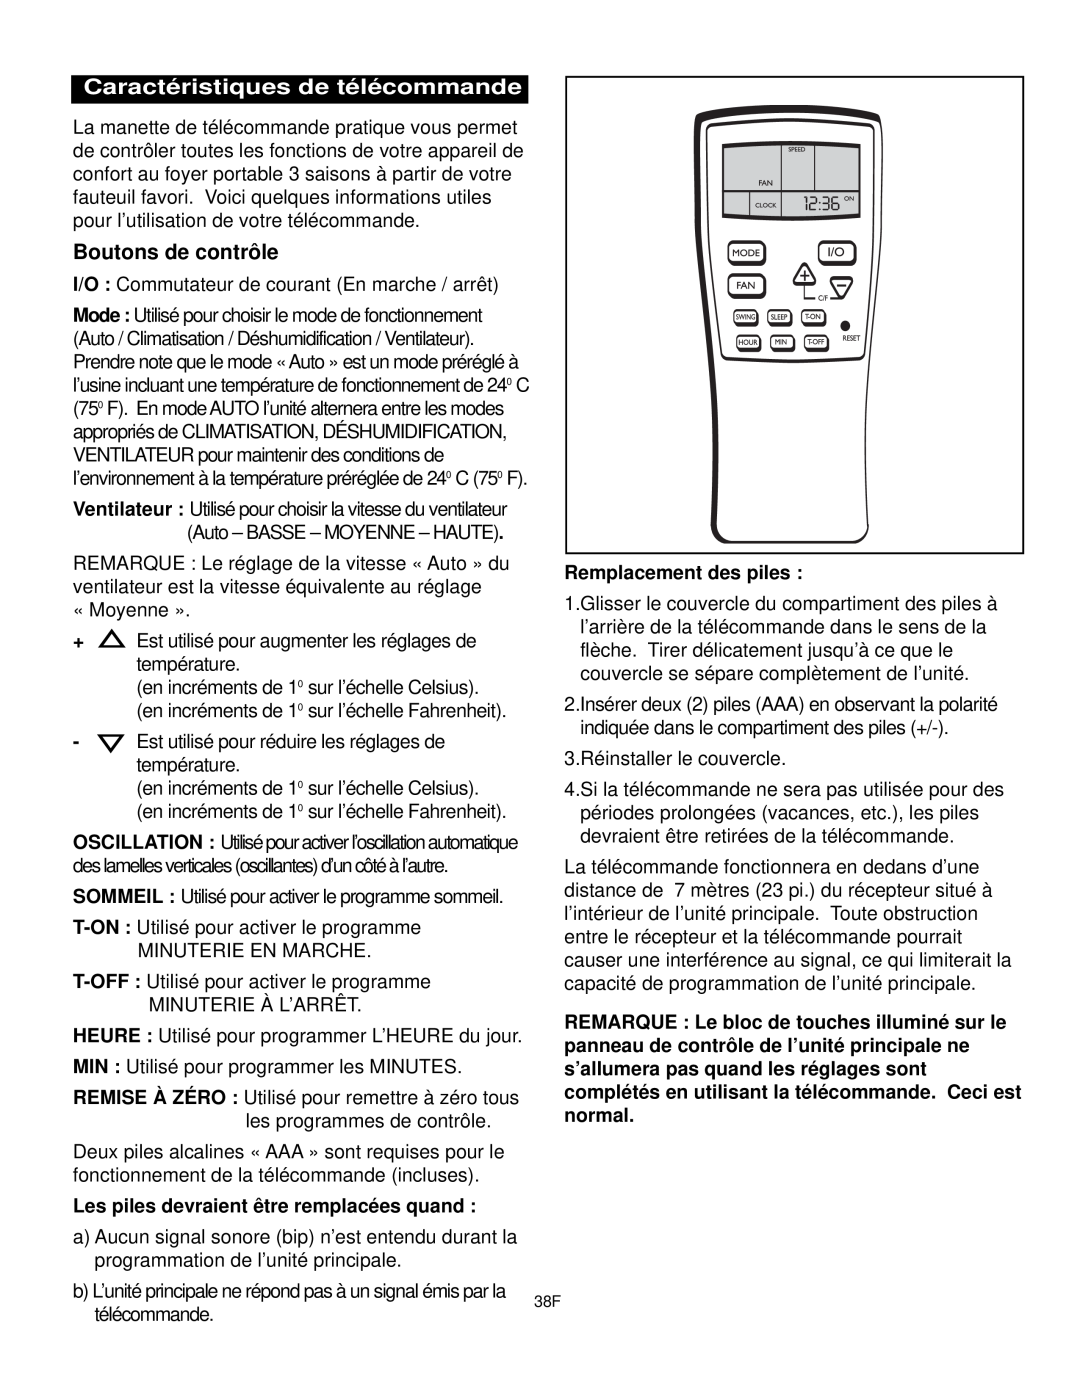 Danby DPAC10030 manual Caractéristiques de télécommande, Boutons de contrôle, Remplacement des piles 